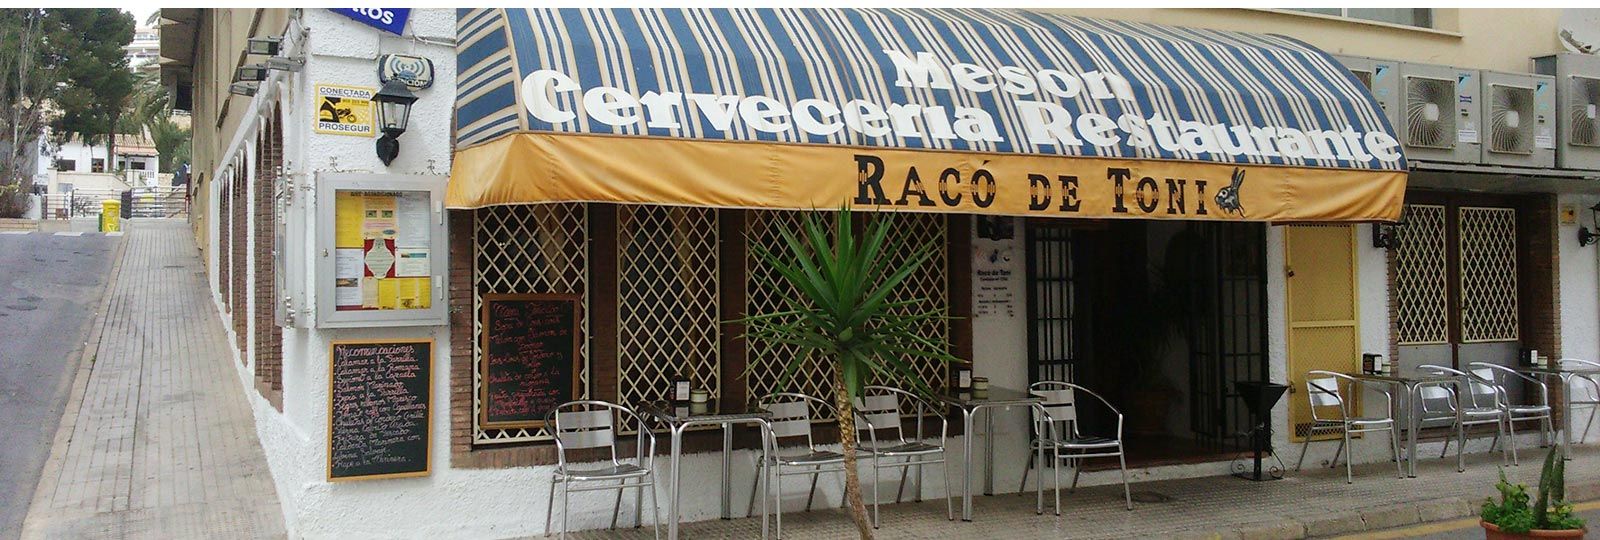 Restaurante Mesón Racó de Toni - Fachada restaurante